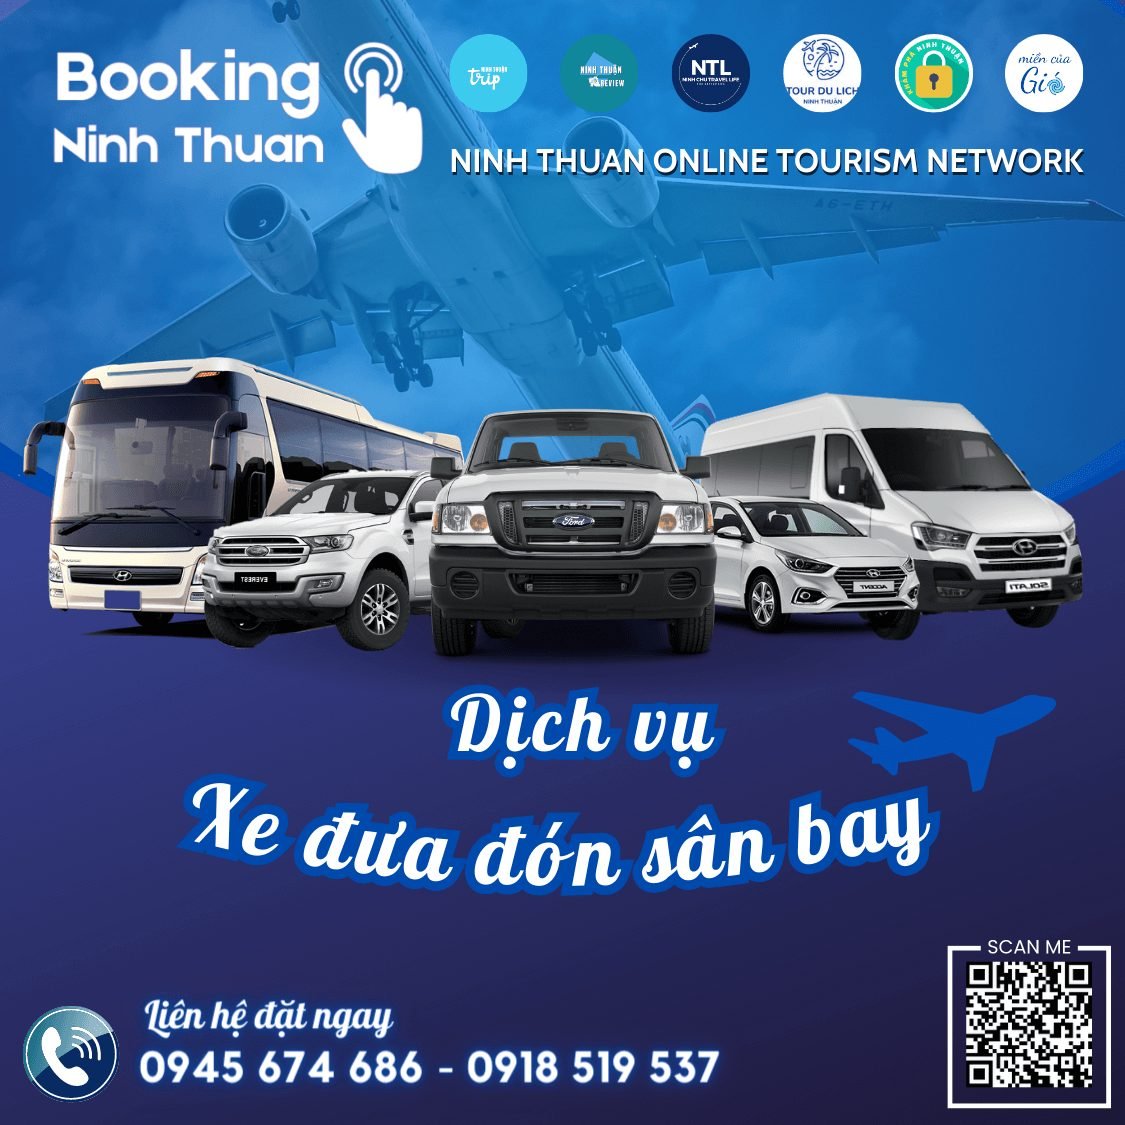 Tourdulichninhthuan.vn là địa chỉ đặt thuê xe đưa đón sân bay với giá tốt nhất thị trường